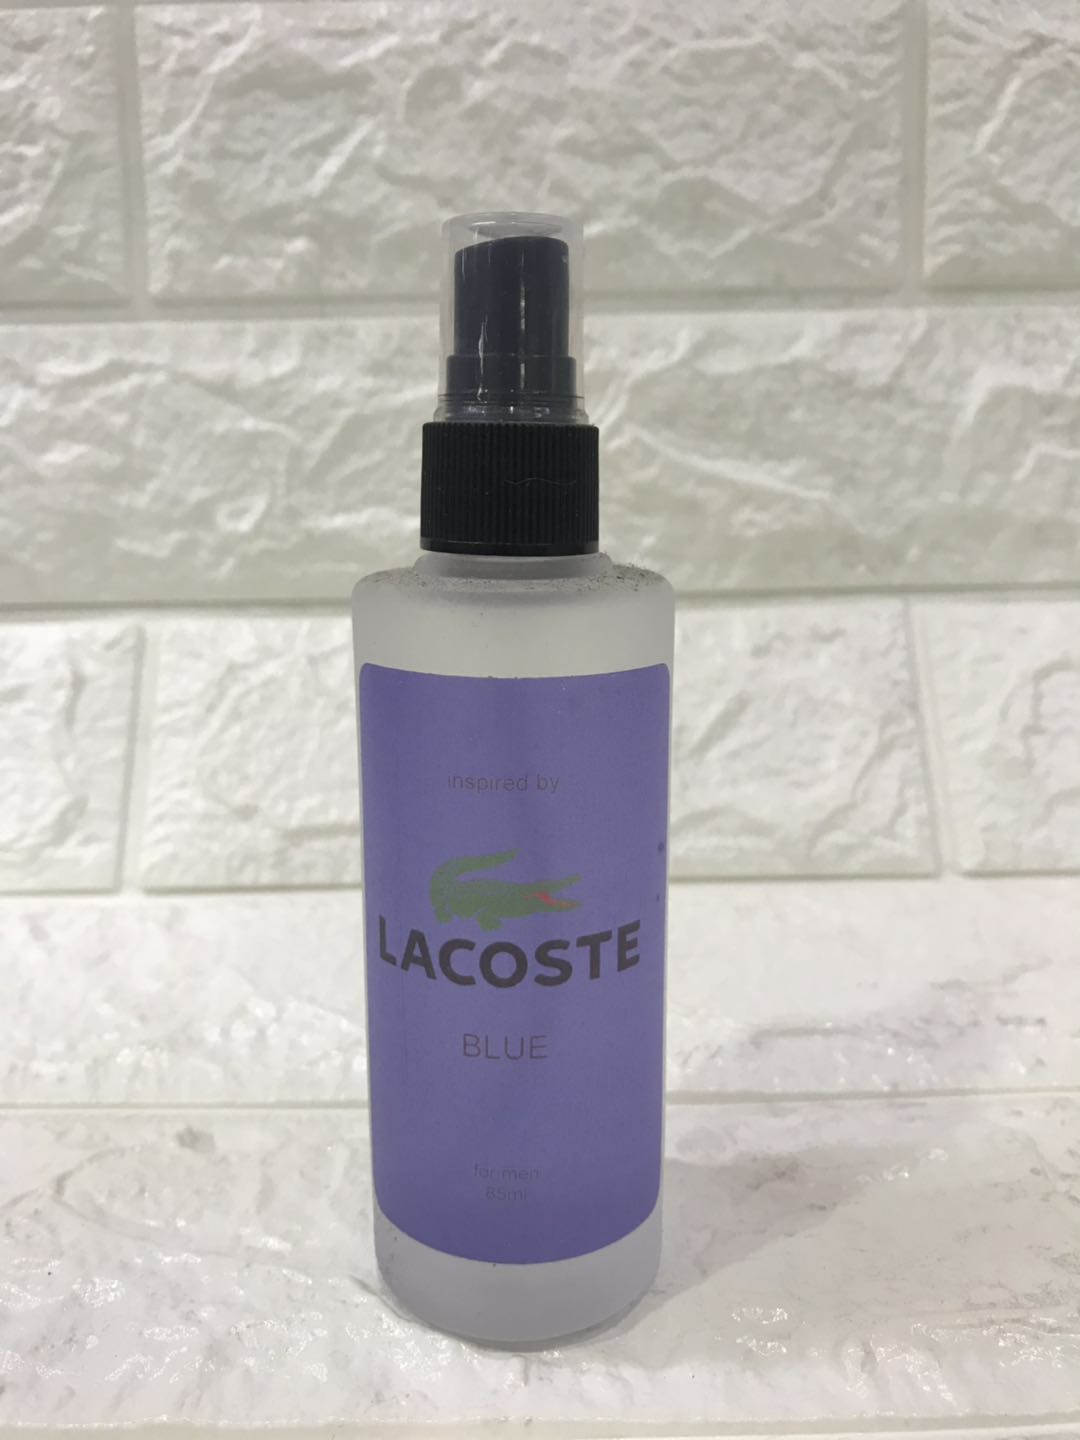 Højde Patent skrot Lacoste Blue oil base perfume for men 85ml | Lazada PH